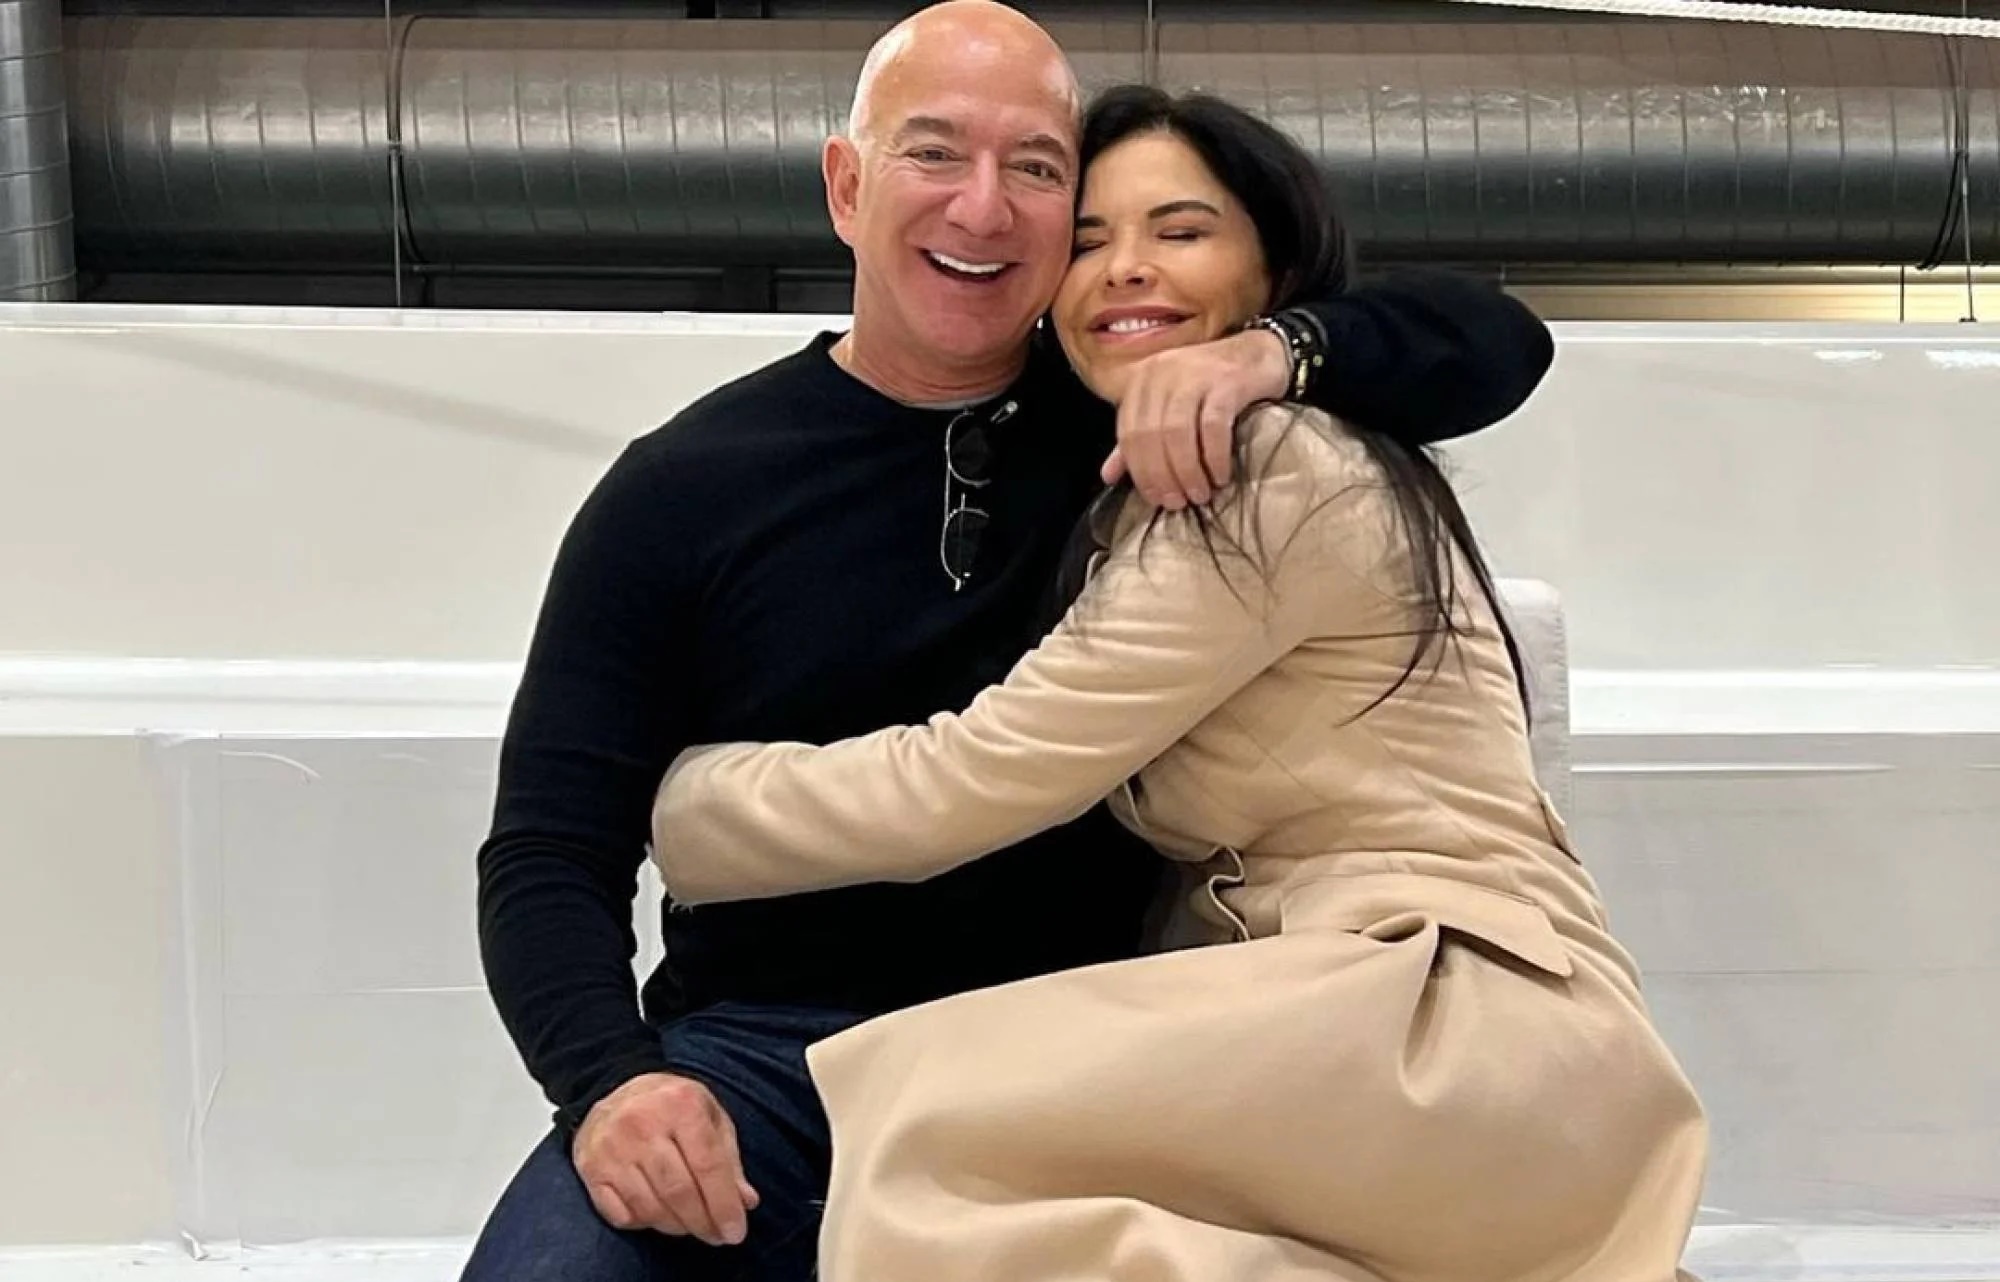 Con gái nuôi &quot;bí ẩn&quot; sẽ thừa kế ¼ tài sản của tỷ phú Jeff Bezos: “Phải” tiêu hết 1,1 tỷ đồng/tuần, sắp xuất hiện trước công chúng với vai trò mới - Ảnh 3.